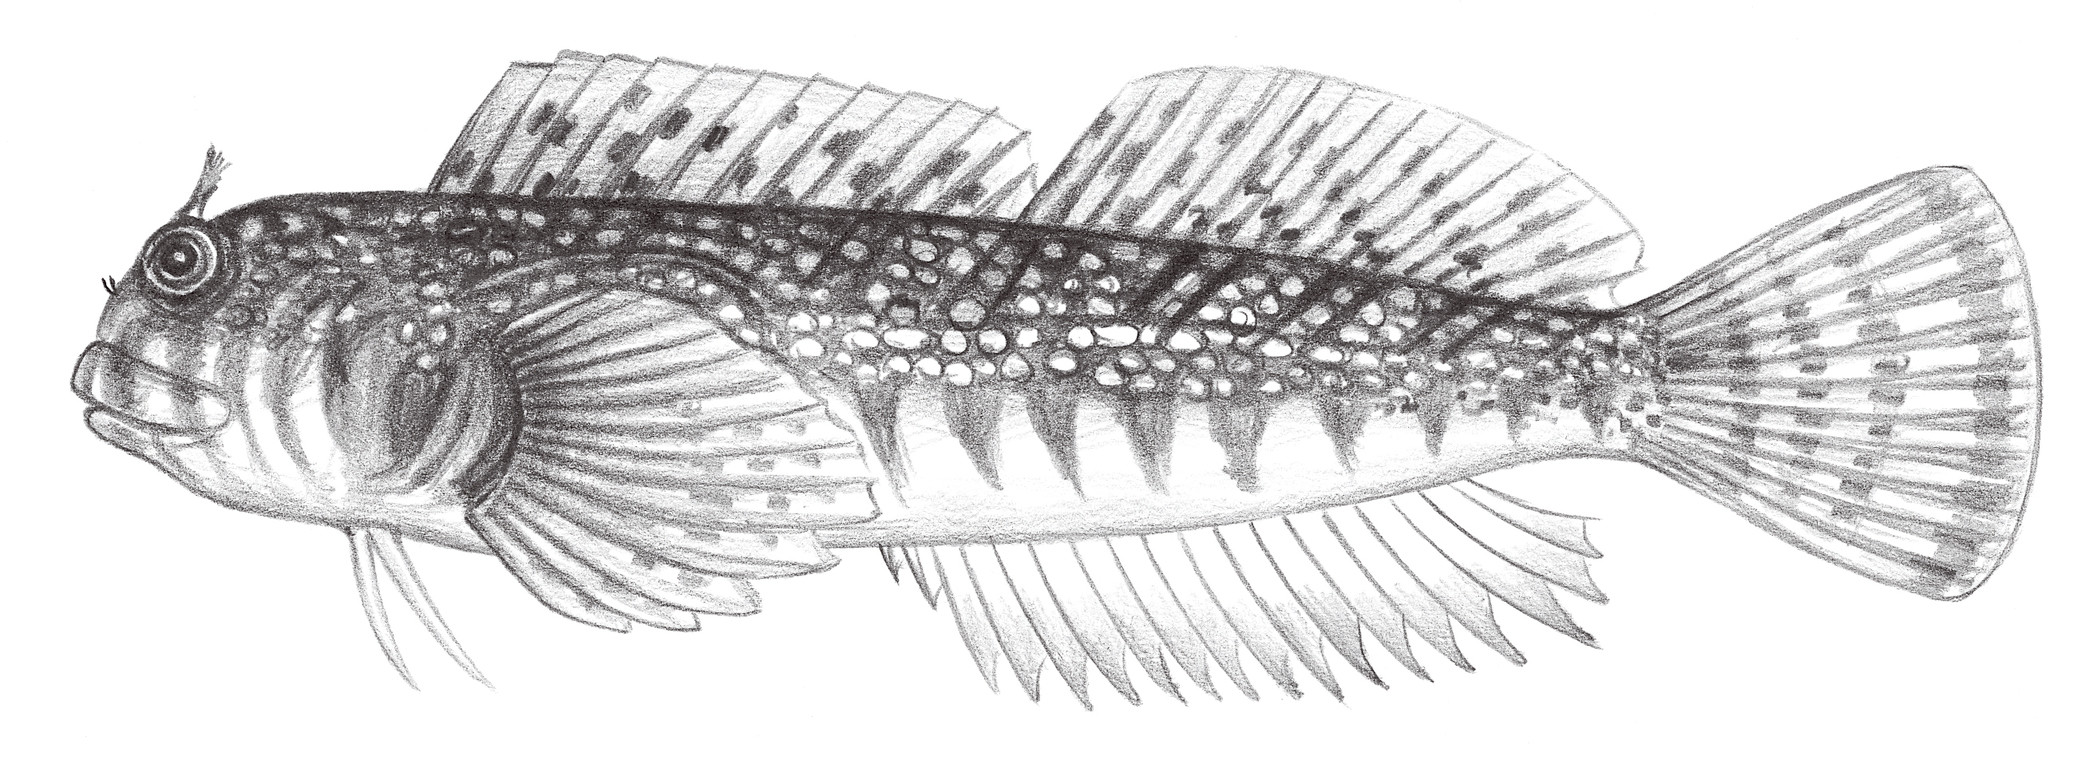 1966.	纓唇犁齒鳚 Entomacrodus epalzeocheilos (Bleeker, 1859)